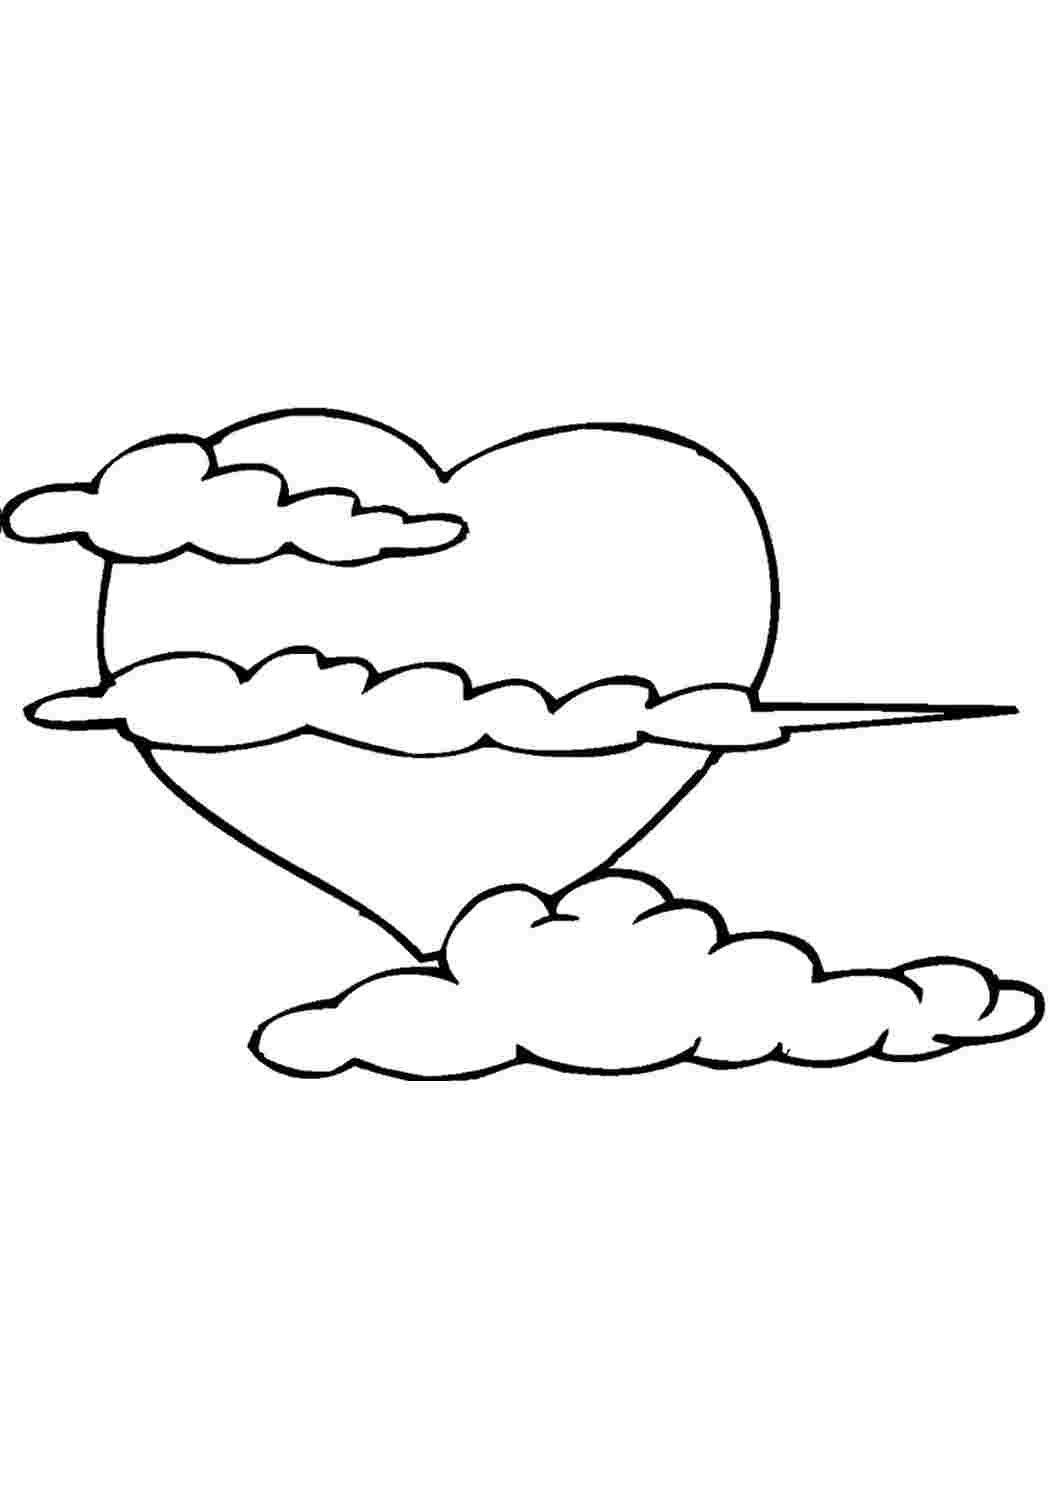 Контурный рисунок небо и облака